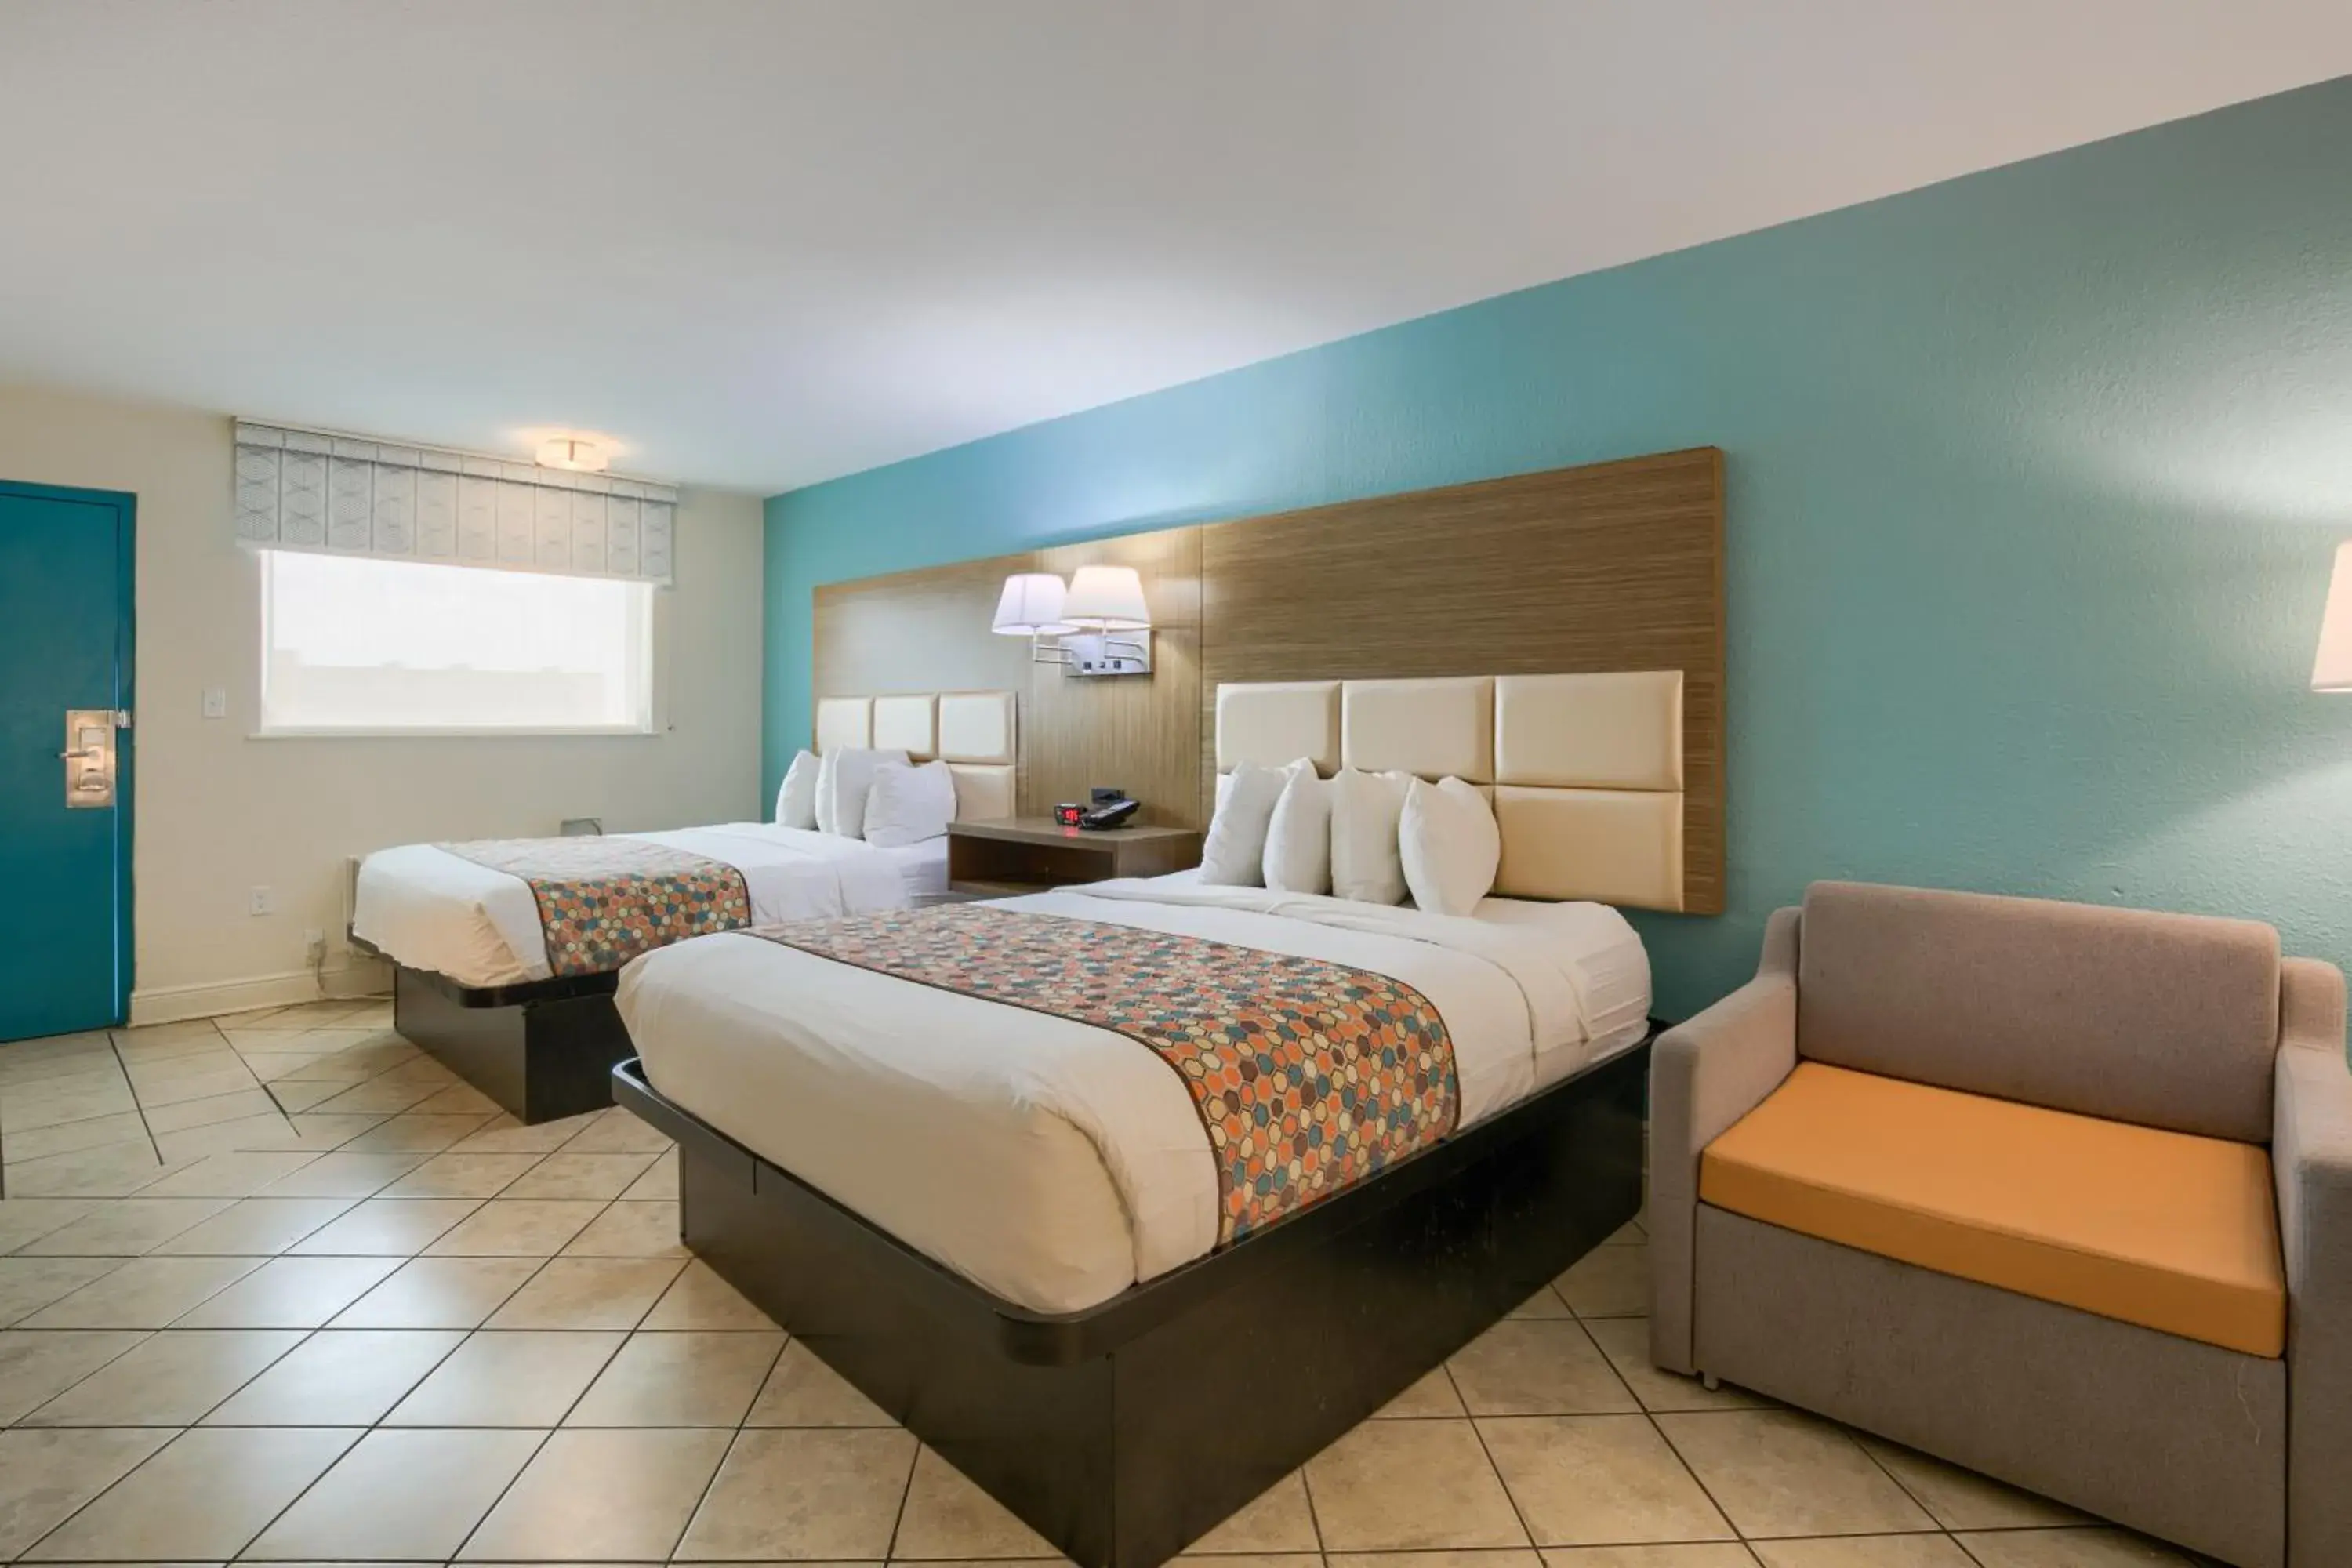 Bed in Beachside Resort Hotel